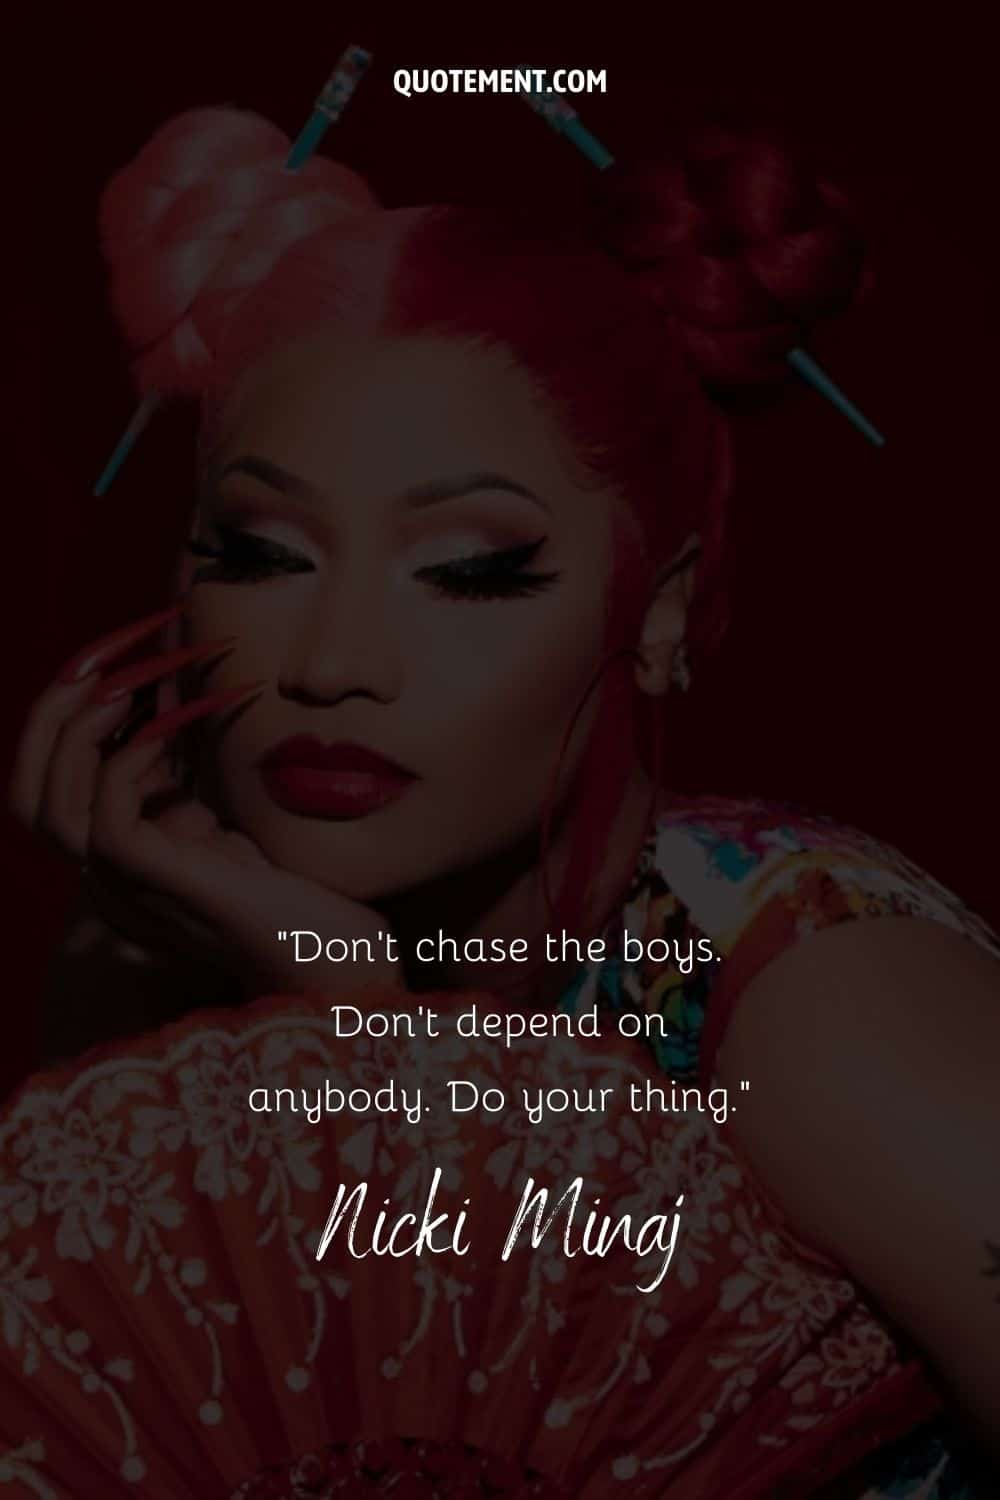 Cita motivadora de la rapera Nicki Minaj y su foto de fondo